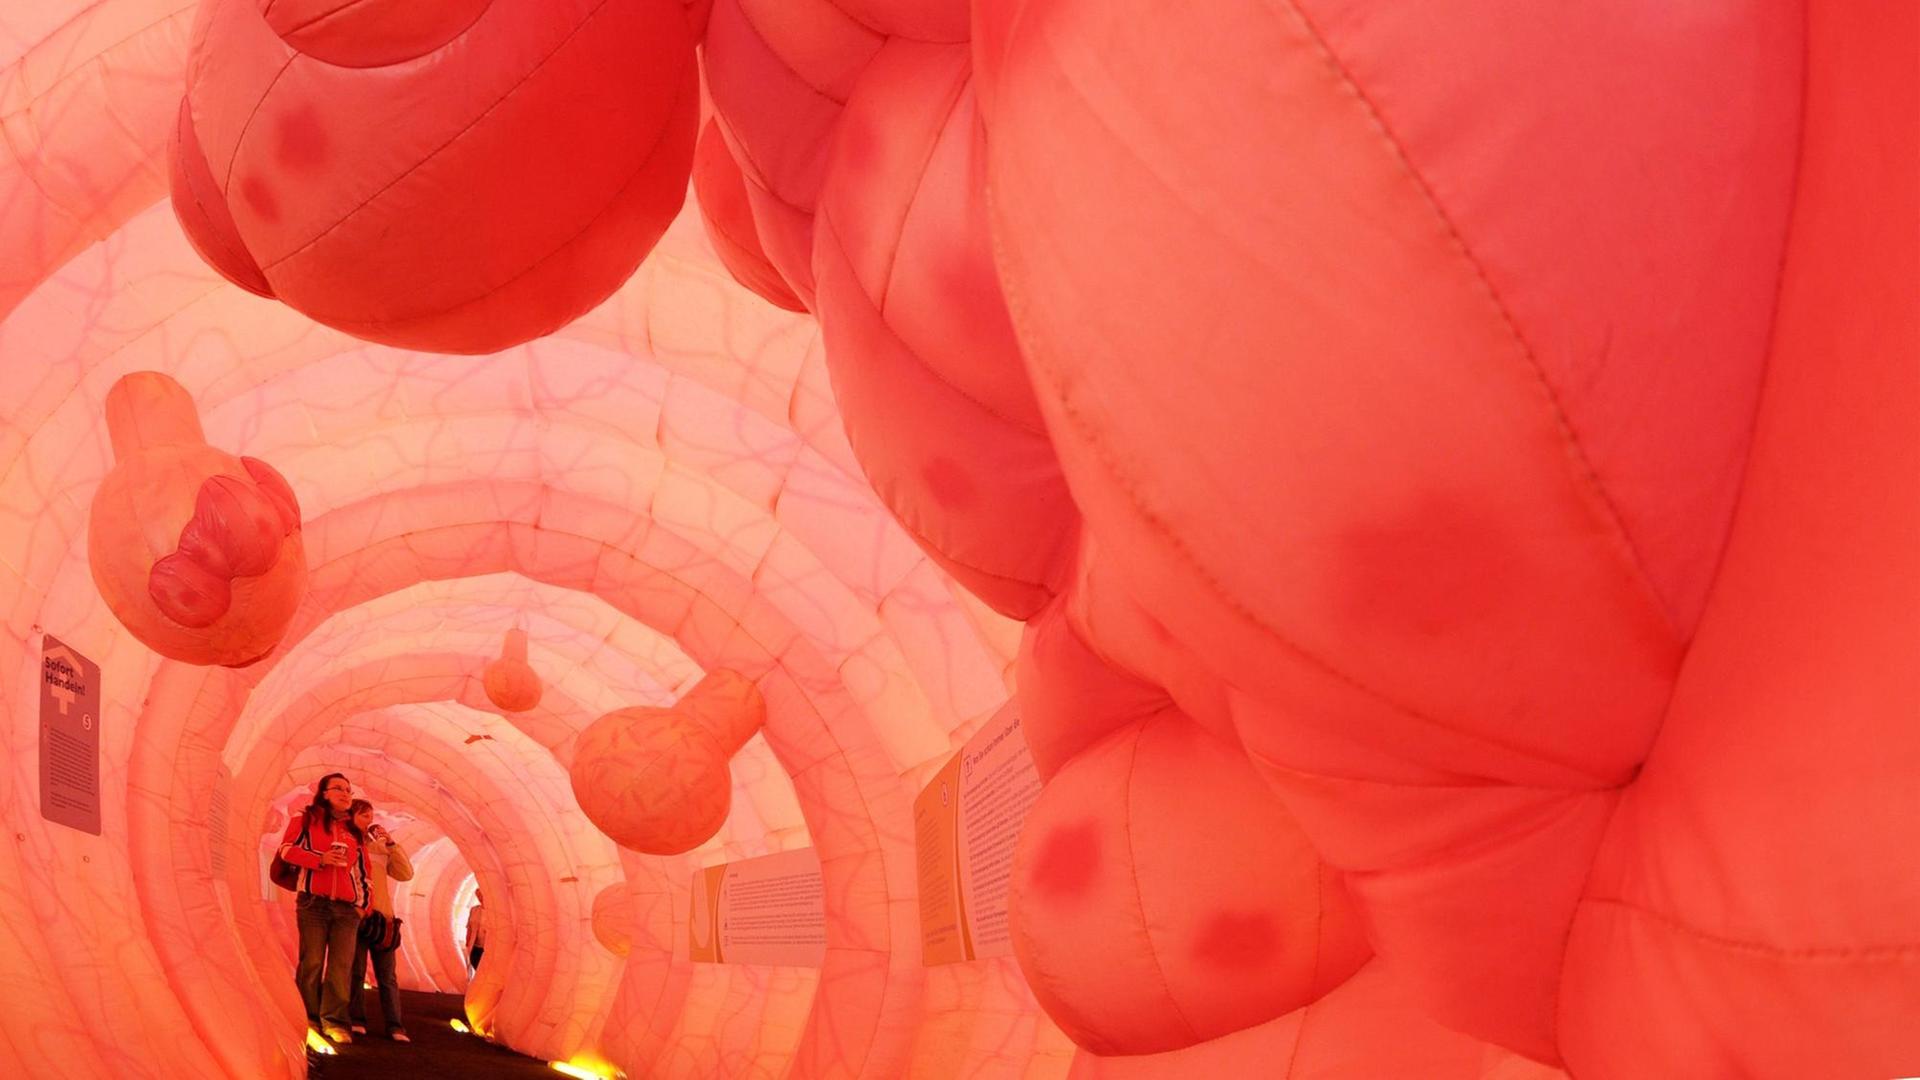 Besucher betrachten am Dienstag Wucherungen und Polypen in der 30 Meter langen Nachbildung eines menschlichen Darmes in Dresden. Das begehbare, etwa drei Meter hohe Modell soll für die Darmkrebs-Vorsorge werben. Gezeigt werden die Funktionen des Verdauungsorganes und mögliche Erkrankungen.